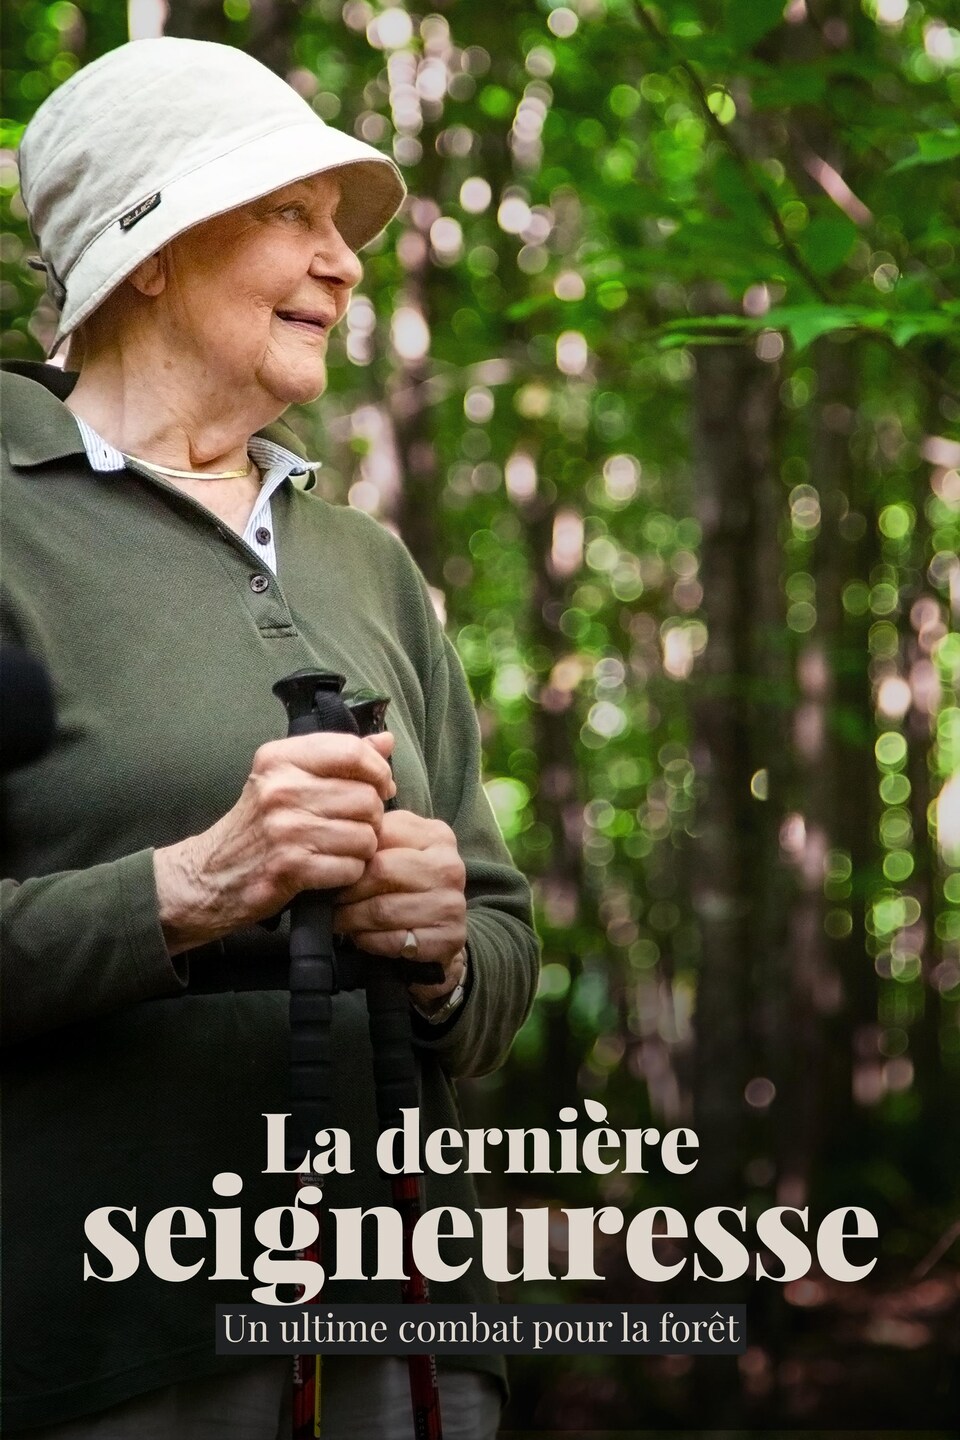 Image promotionnelle de l'article La dernière seigneuresse. Francine, souriante, regarde vers la droite. Elle porte un chapeau blanc et tiens deux bâtons de marche dans ses mains. On aperçoit, derrière elle, une forêt verdoyante.